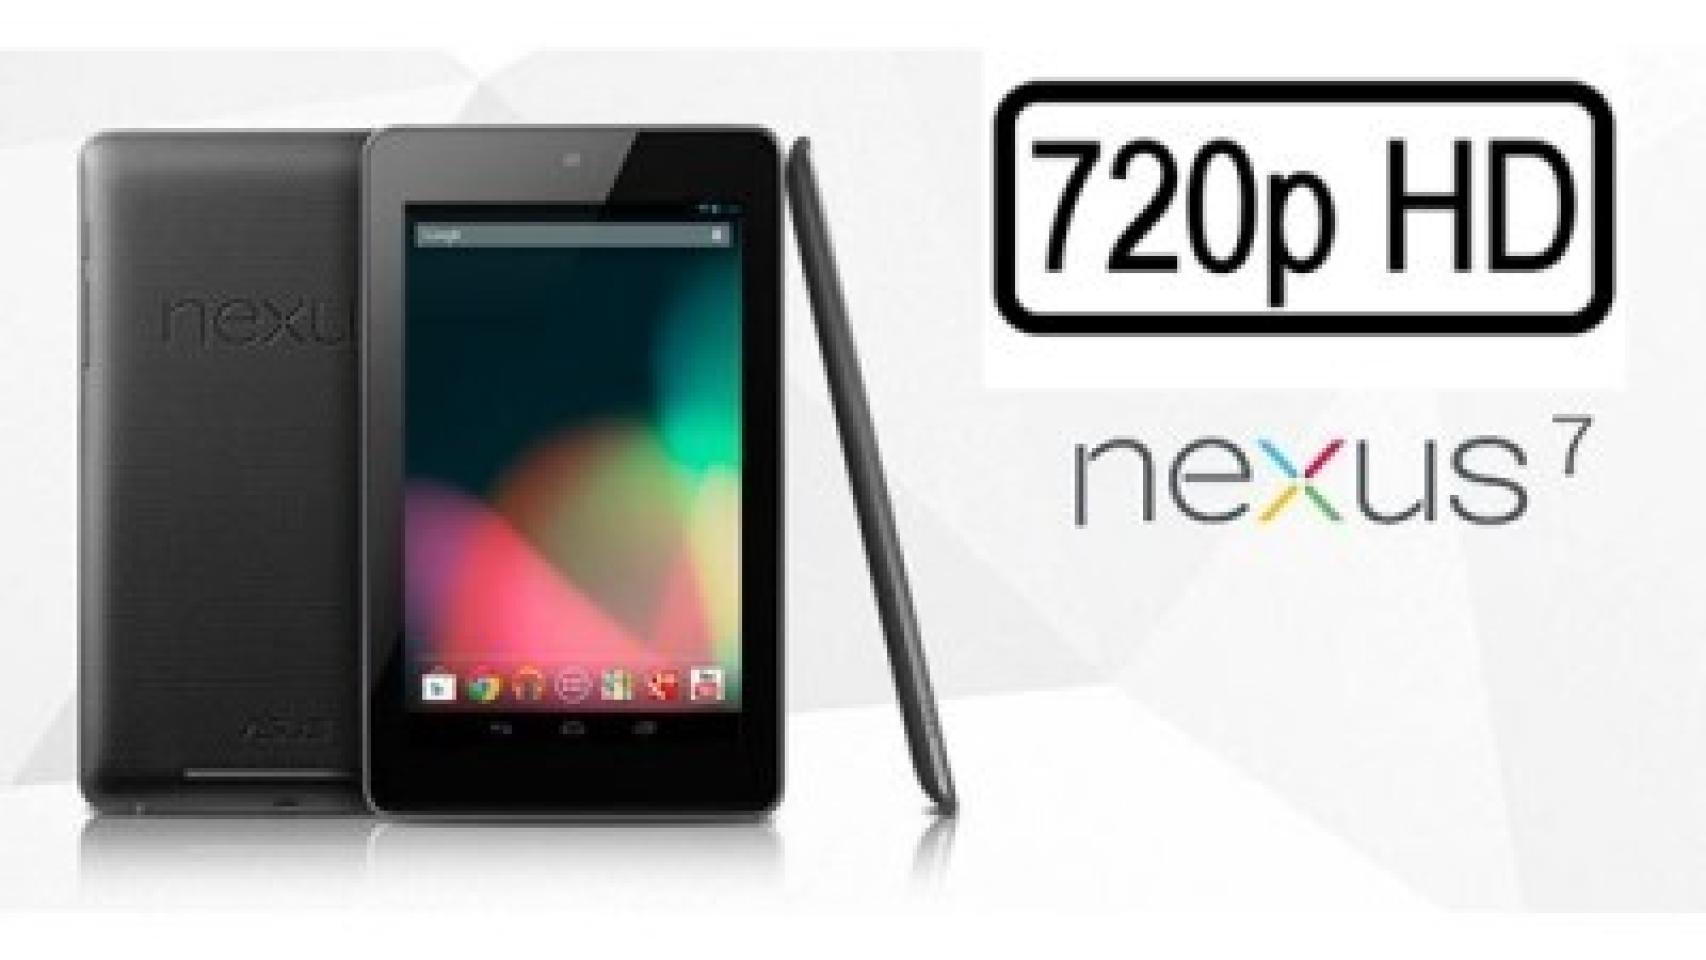 Graba en 720p con tu Nexus 7